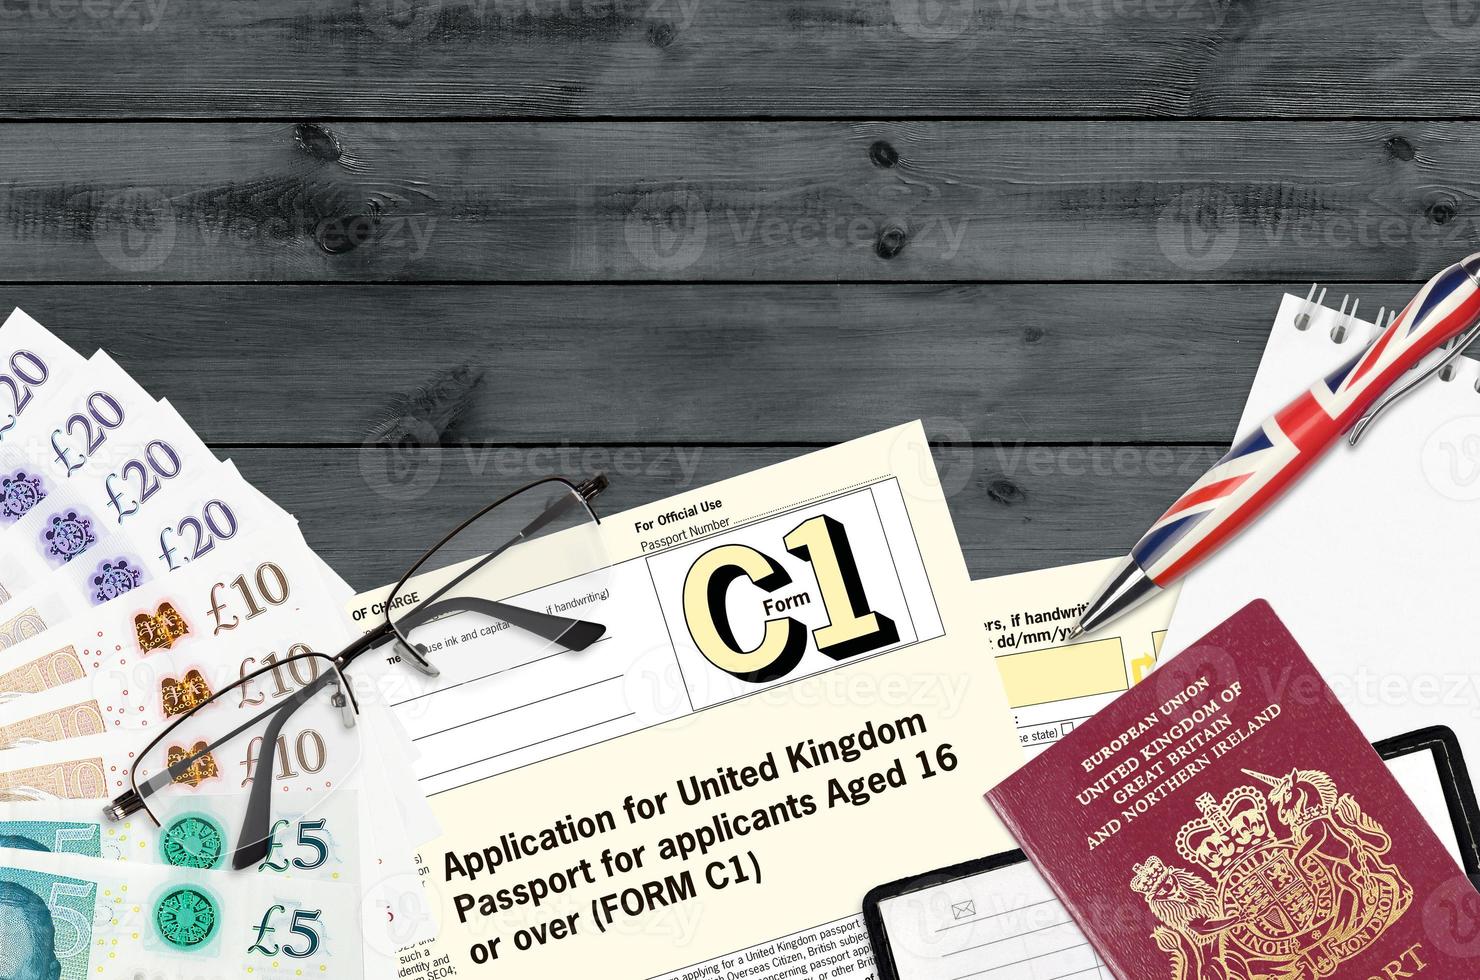 formulário de inglês c1 pedido de passaporte do reino unido para requerentes com 16 anos ou mais encontra-se na mesa com itens de escritório. papelada do passaporte do reino unido foto